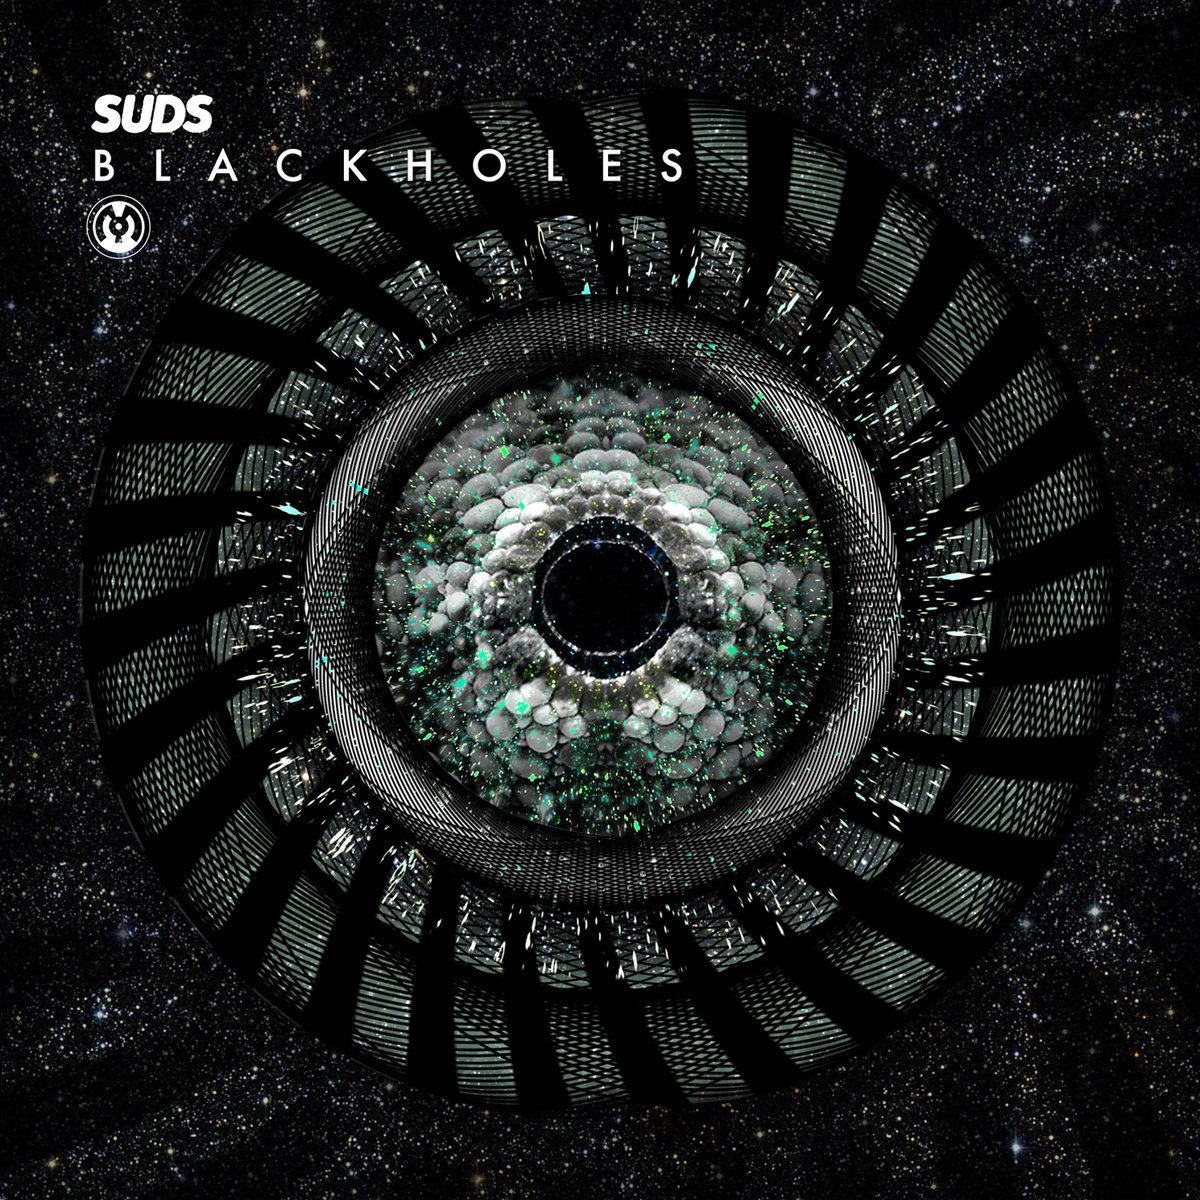 SuDs - Blackholes (Aplsoz Remix) @ 'Blackholes' album (electronic, dubstep)